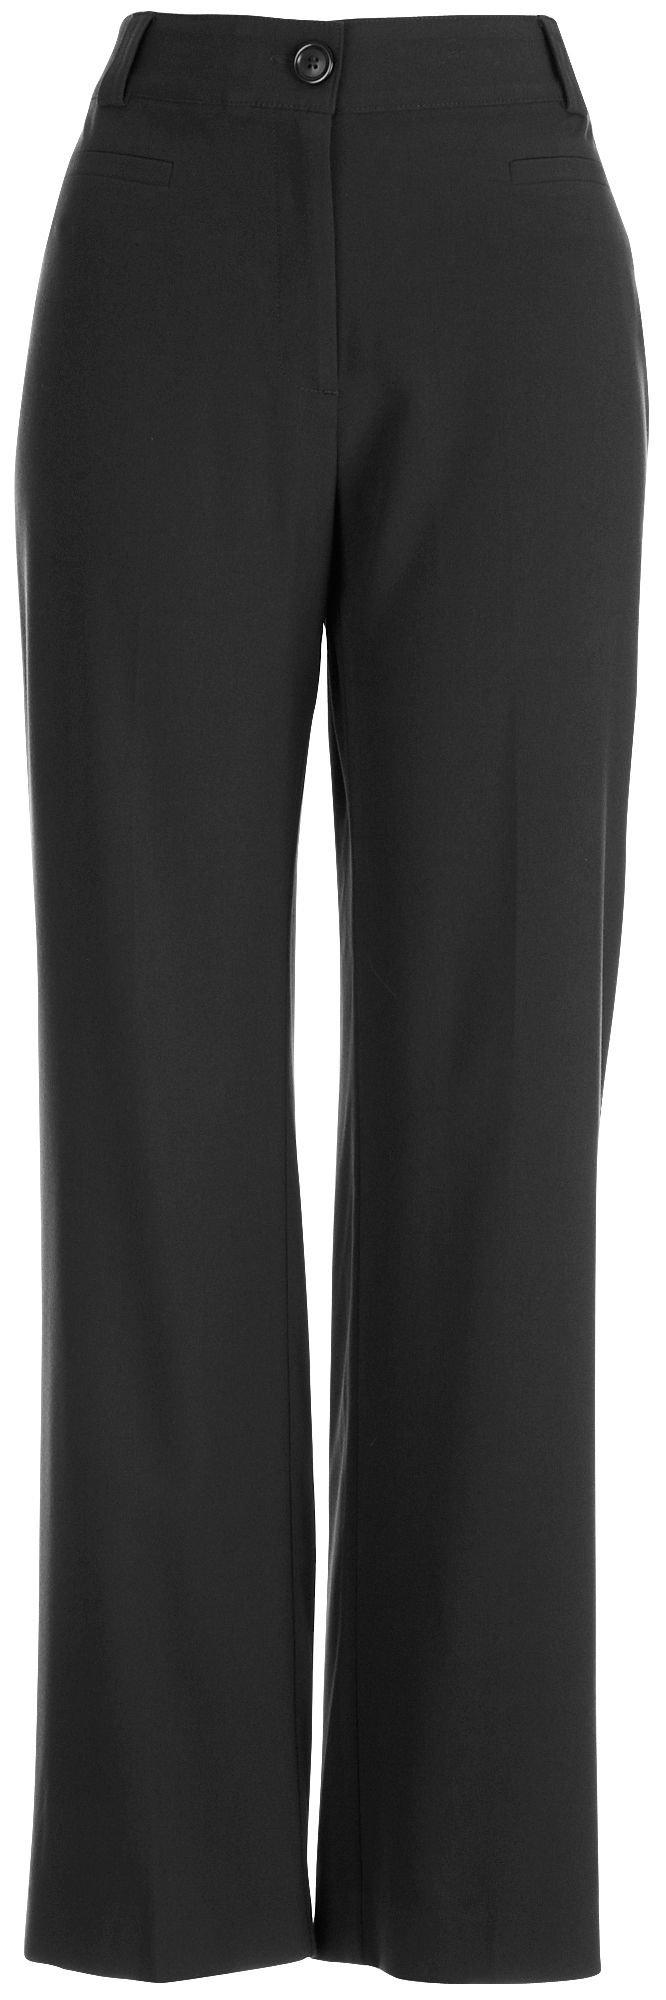 Nue Options Plus Signature Stretch Pants 22W Black